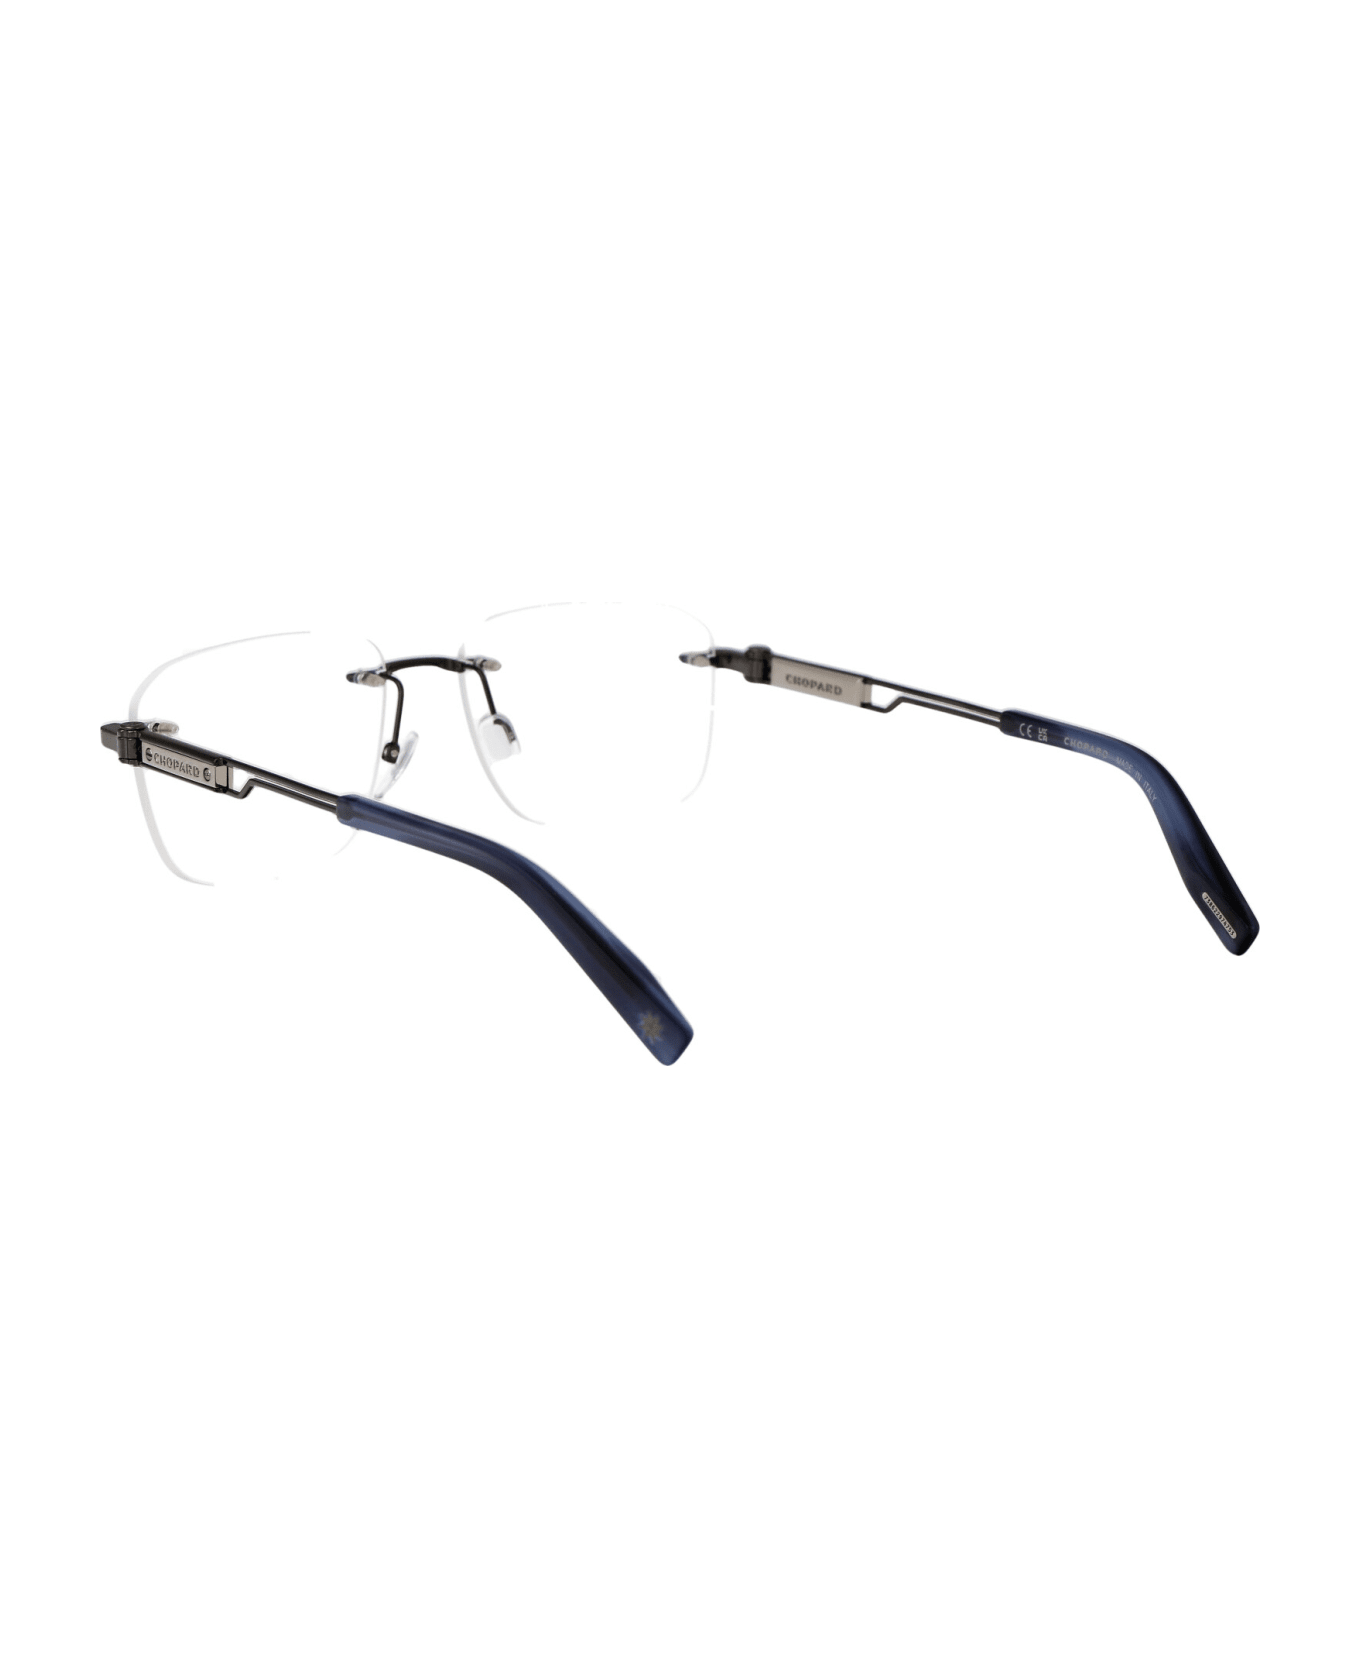 Chopard Vchg86 Glasses - 0568 BACHELITE LUCIDA TOTALE